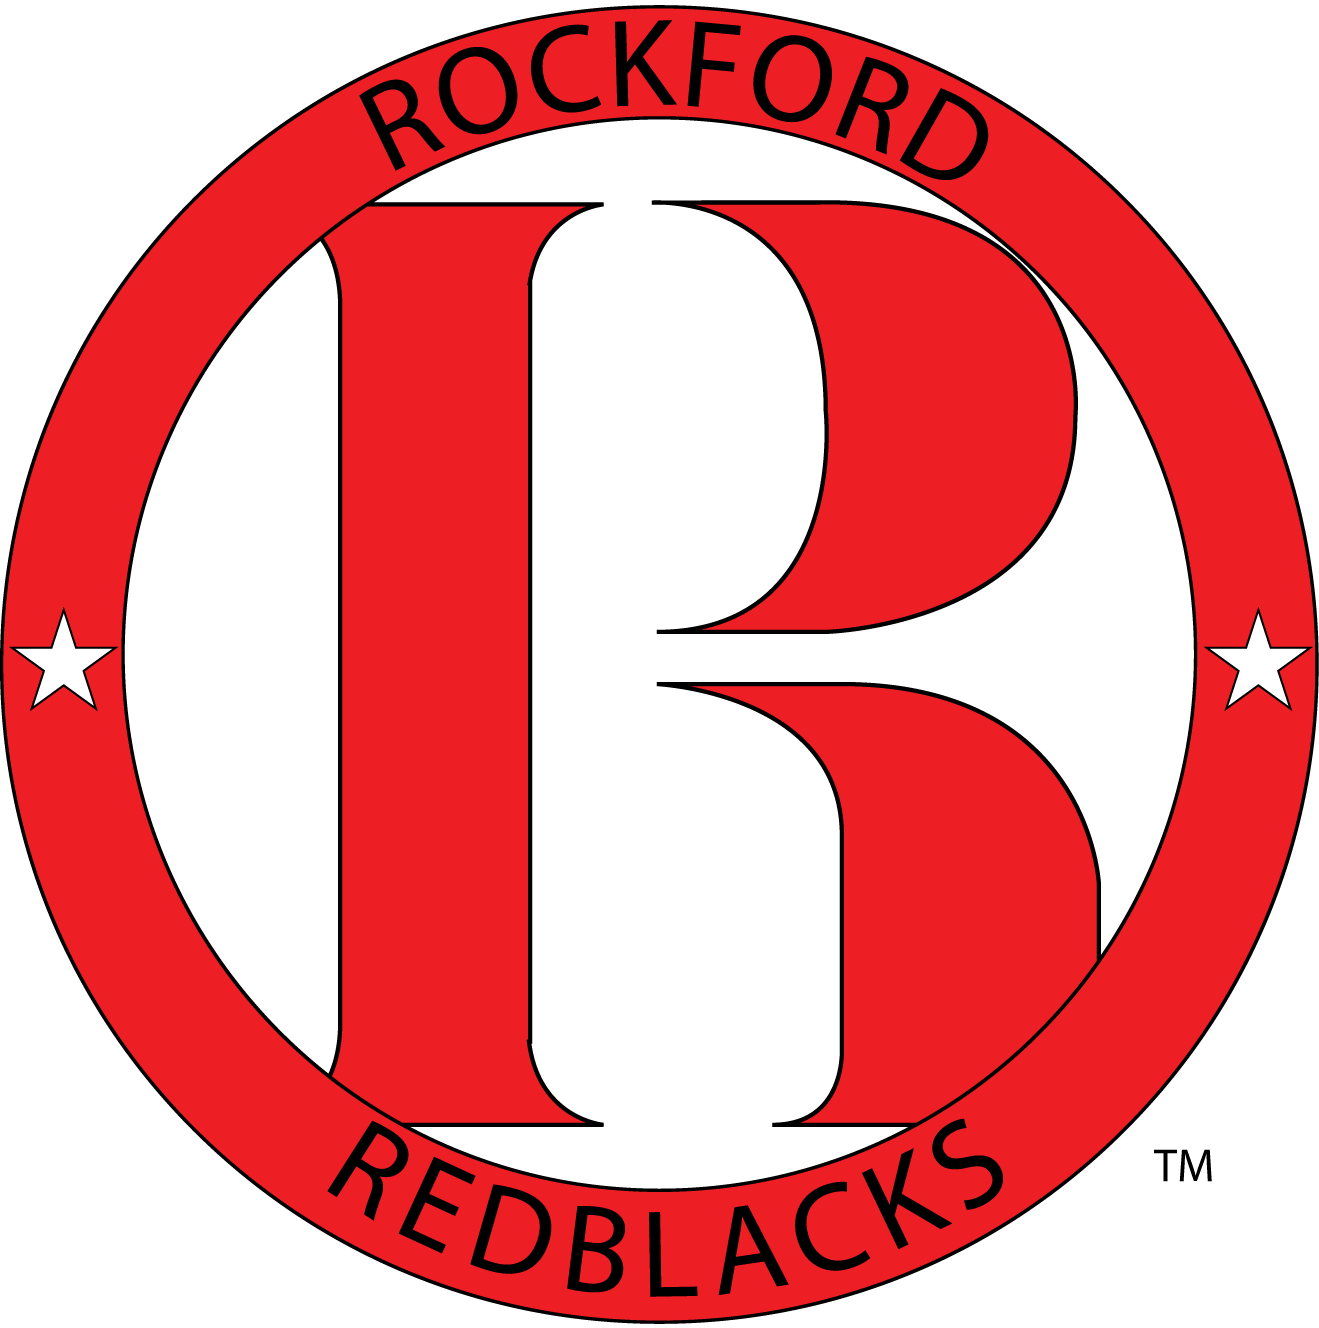 ROCKFORD REDBLACKS